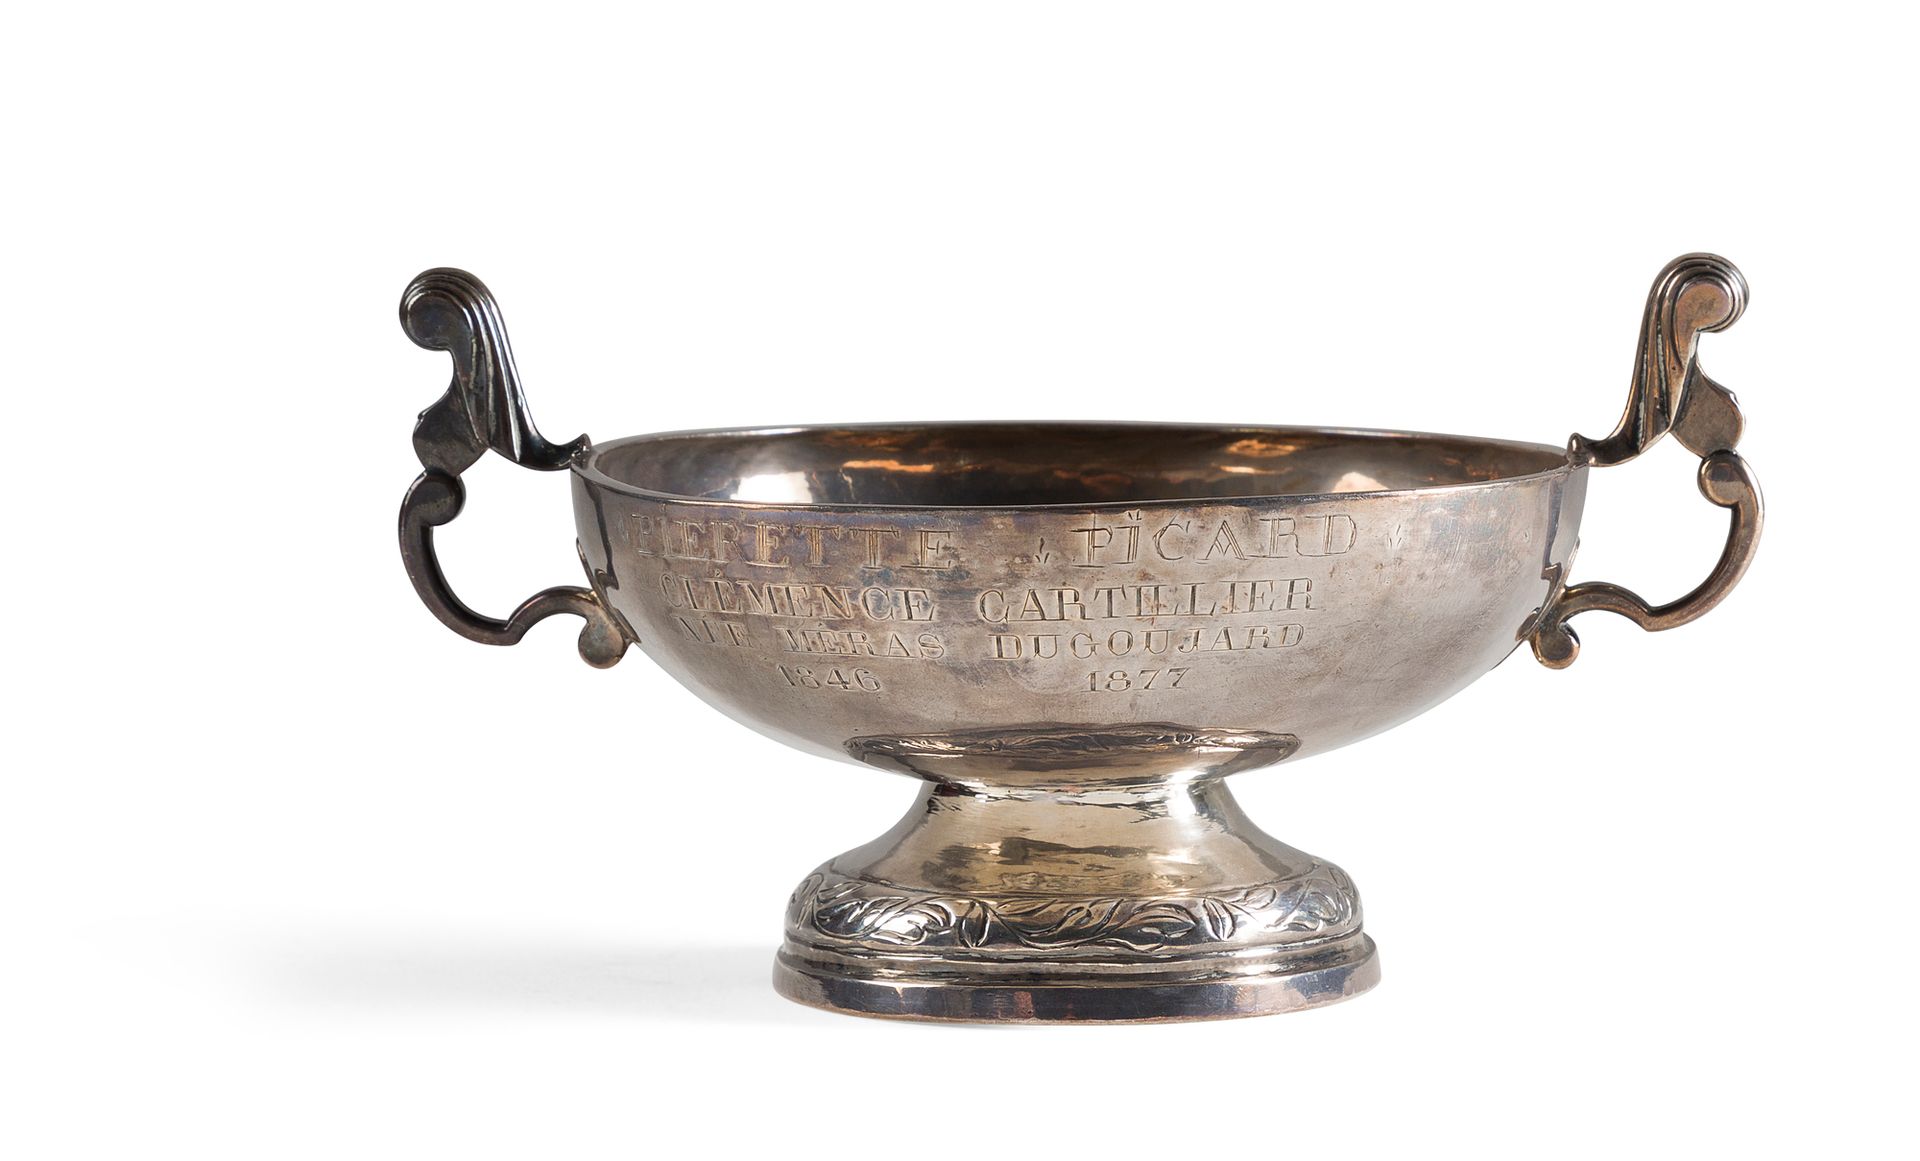 Null 一个普通的银质婚礼杯，在一个底座上凿有卷轴和花边，侧面有把手，边缘刻有19世纪的铭文（轻微凹陷）。

18世纪

直径11.5厘米。高6厘米

重量2&hellip;